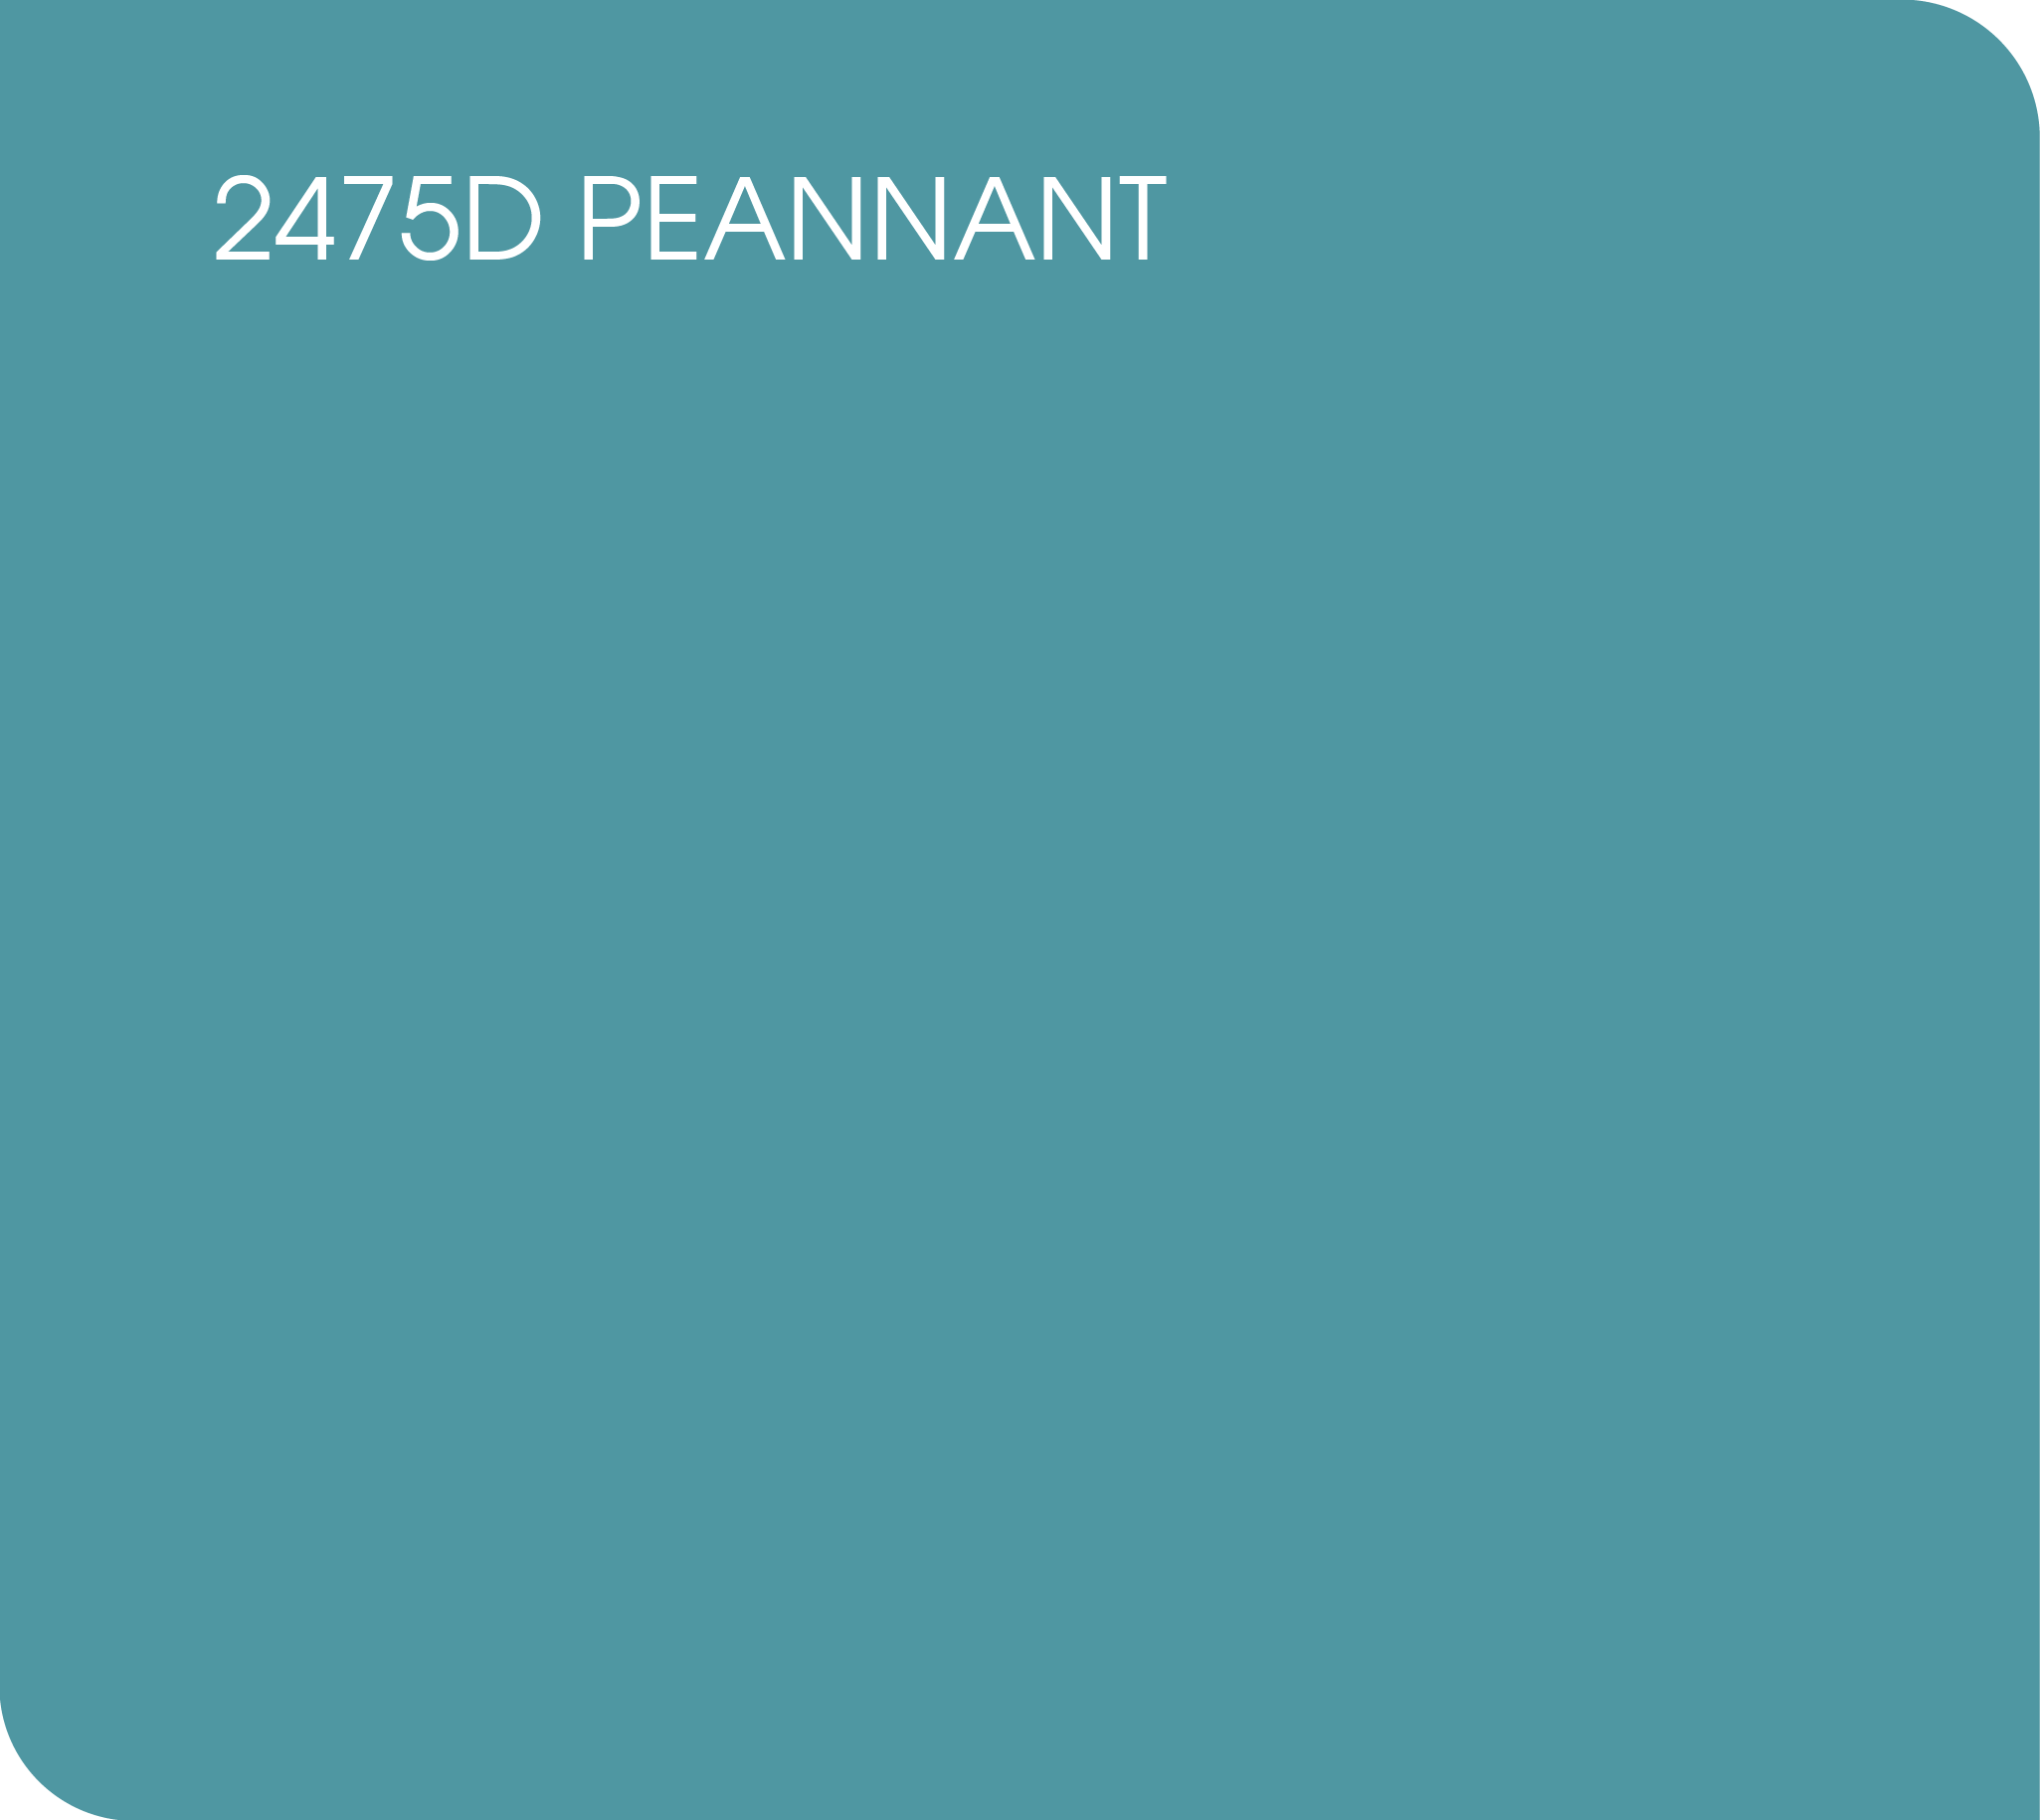 2475D peannant